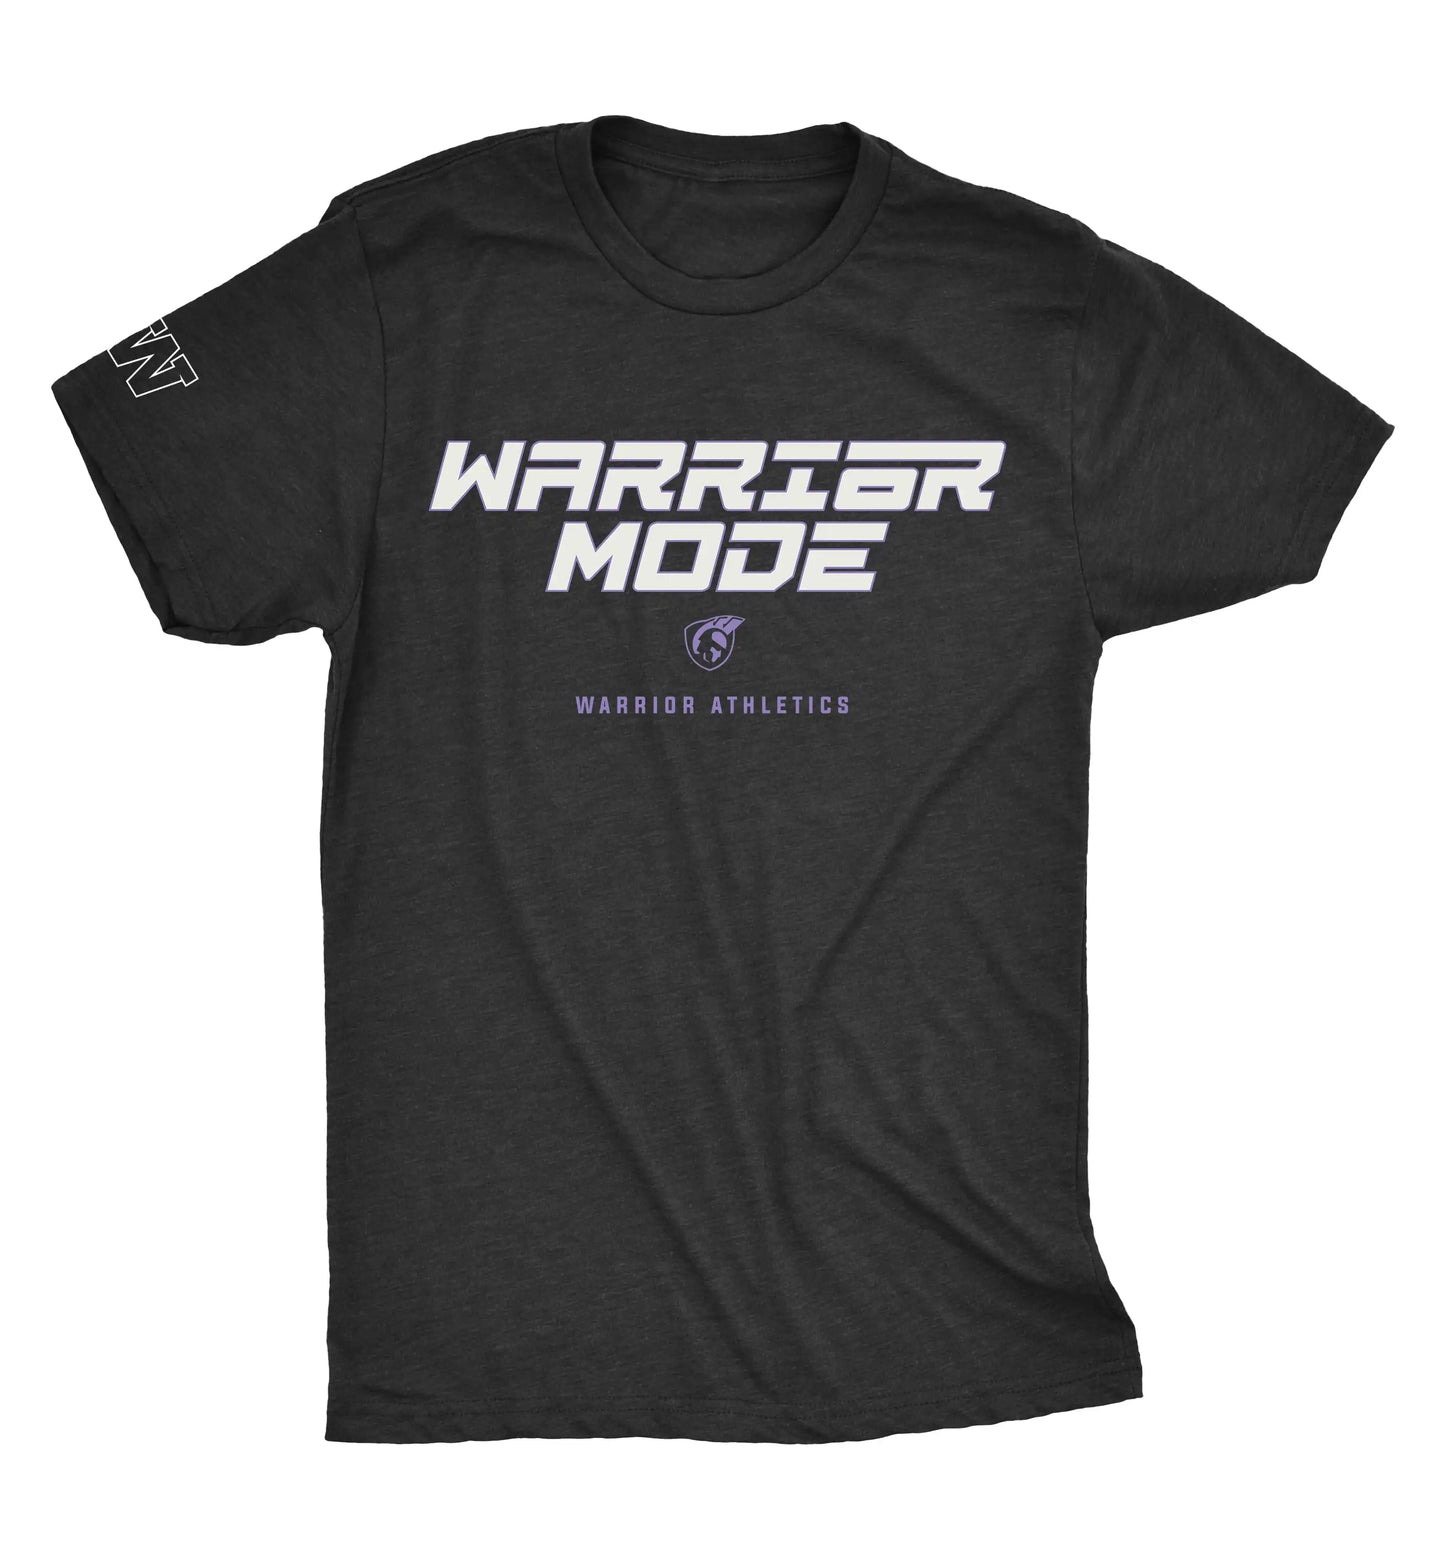 WARRIOR MODE - Warrior Athletics Tshirt